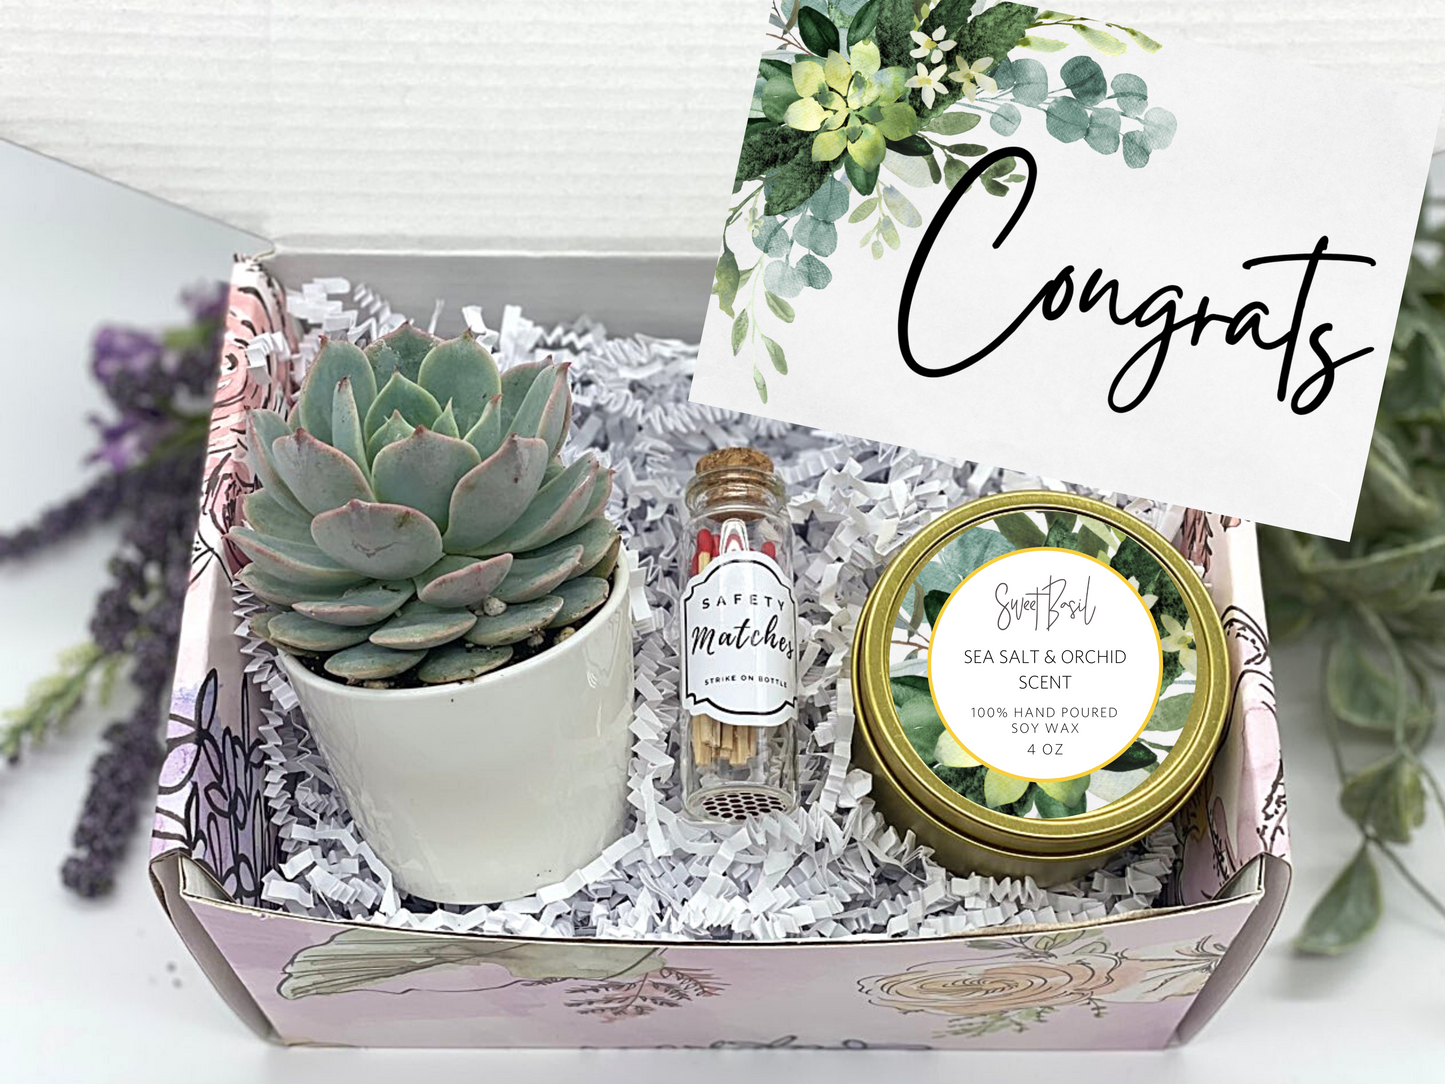 Foliage Congrats Gift Box